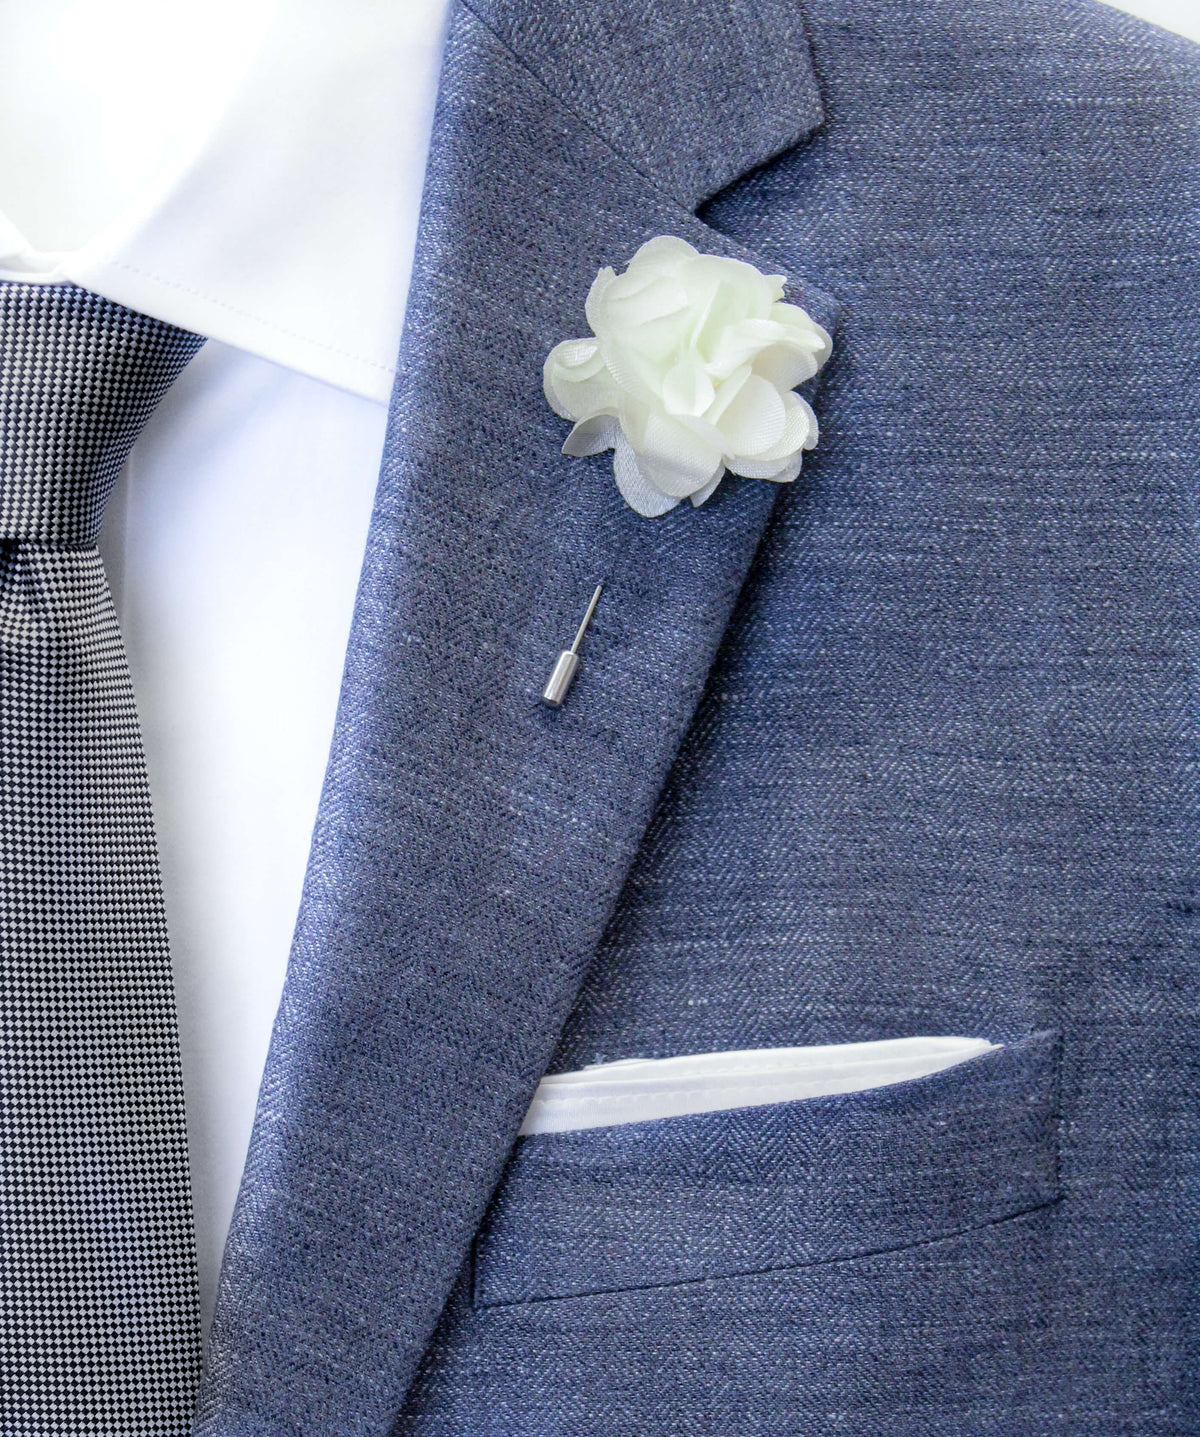 Blushing Ivory Flower Lapel Pin